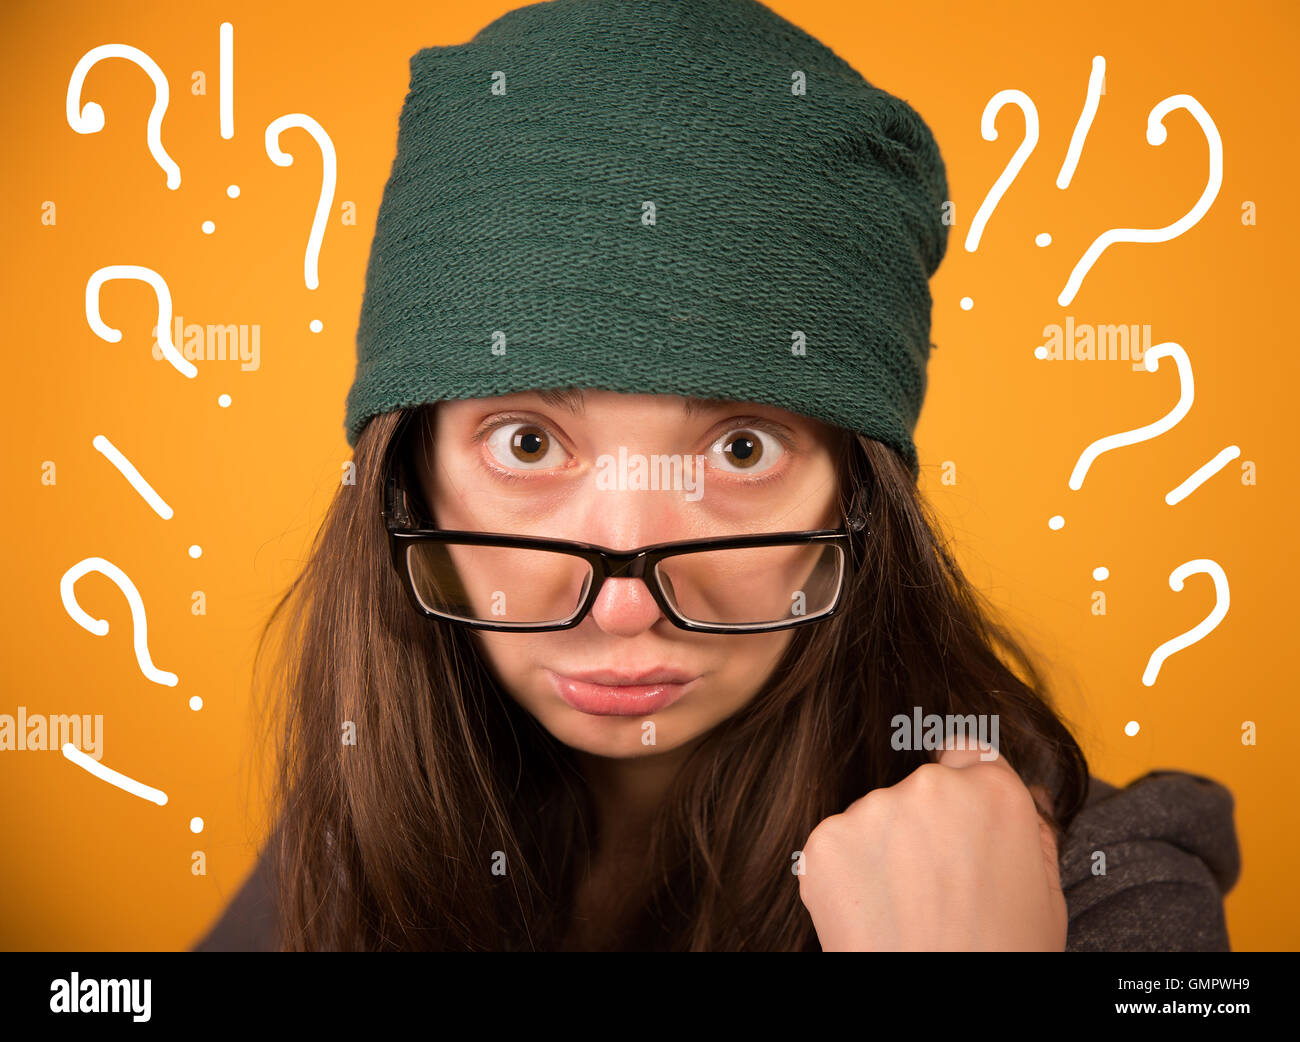 La chica con gafas y sombrero sobre un fondo amarillo Foto de stock